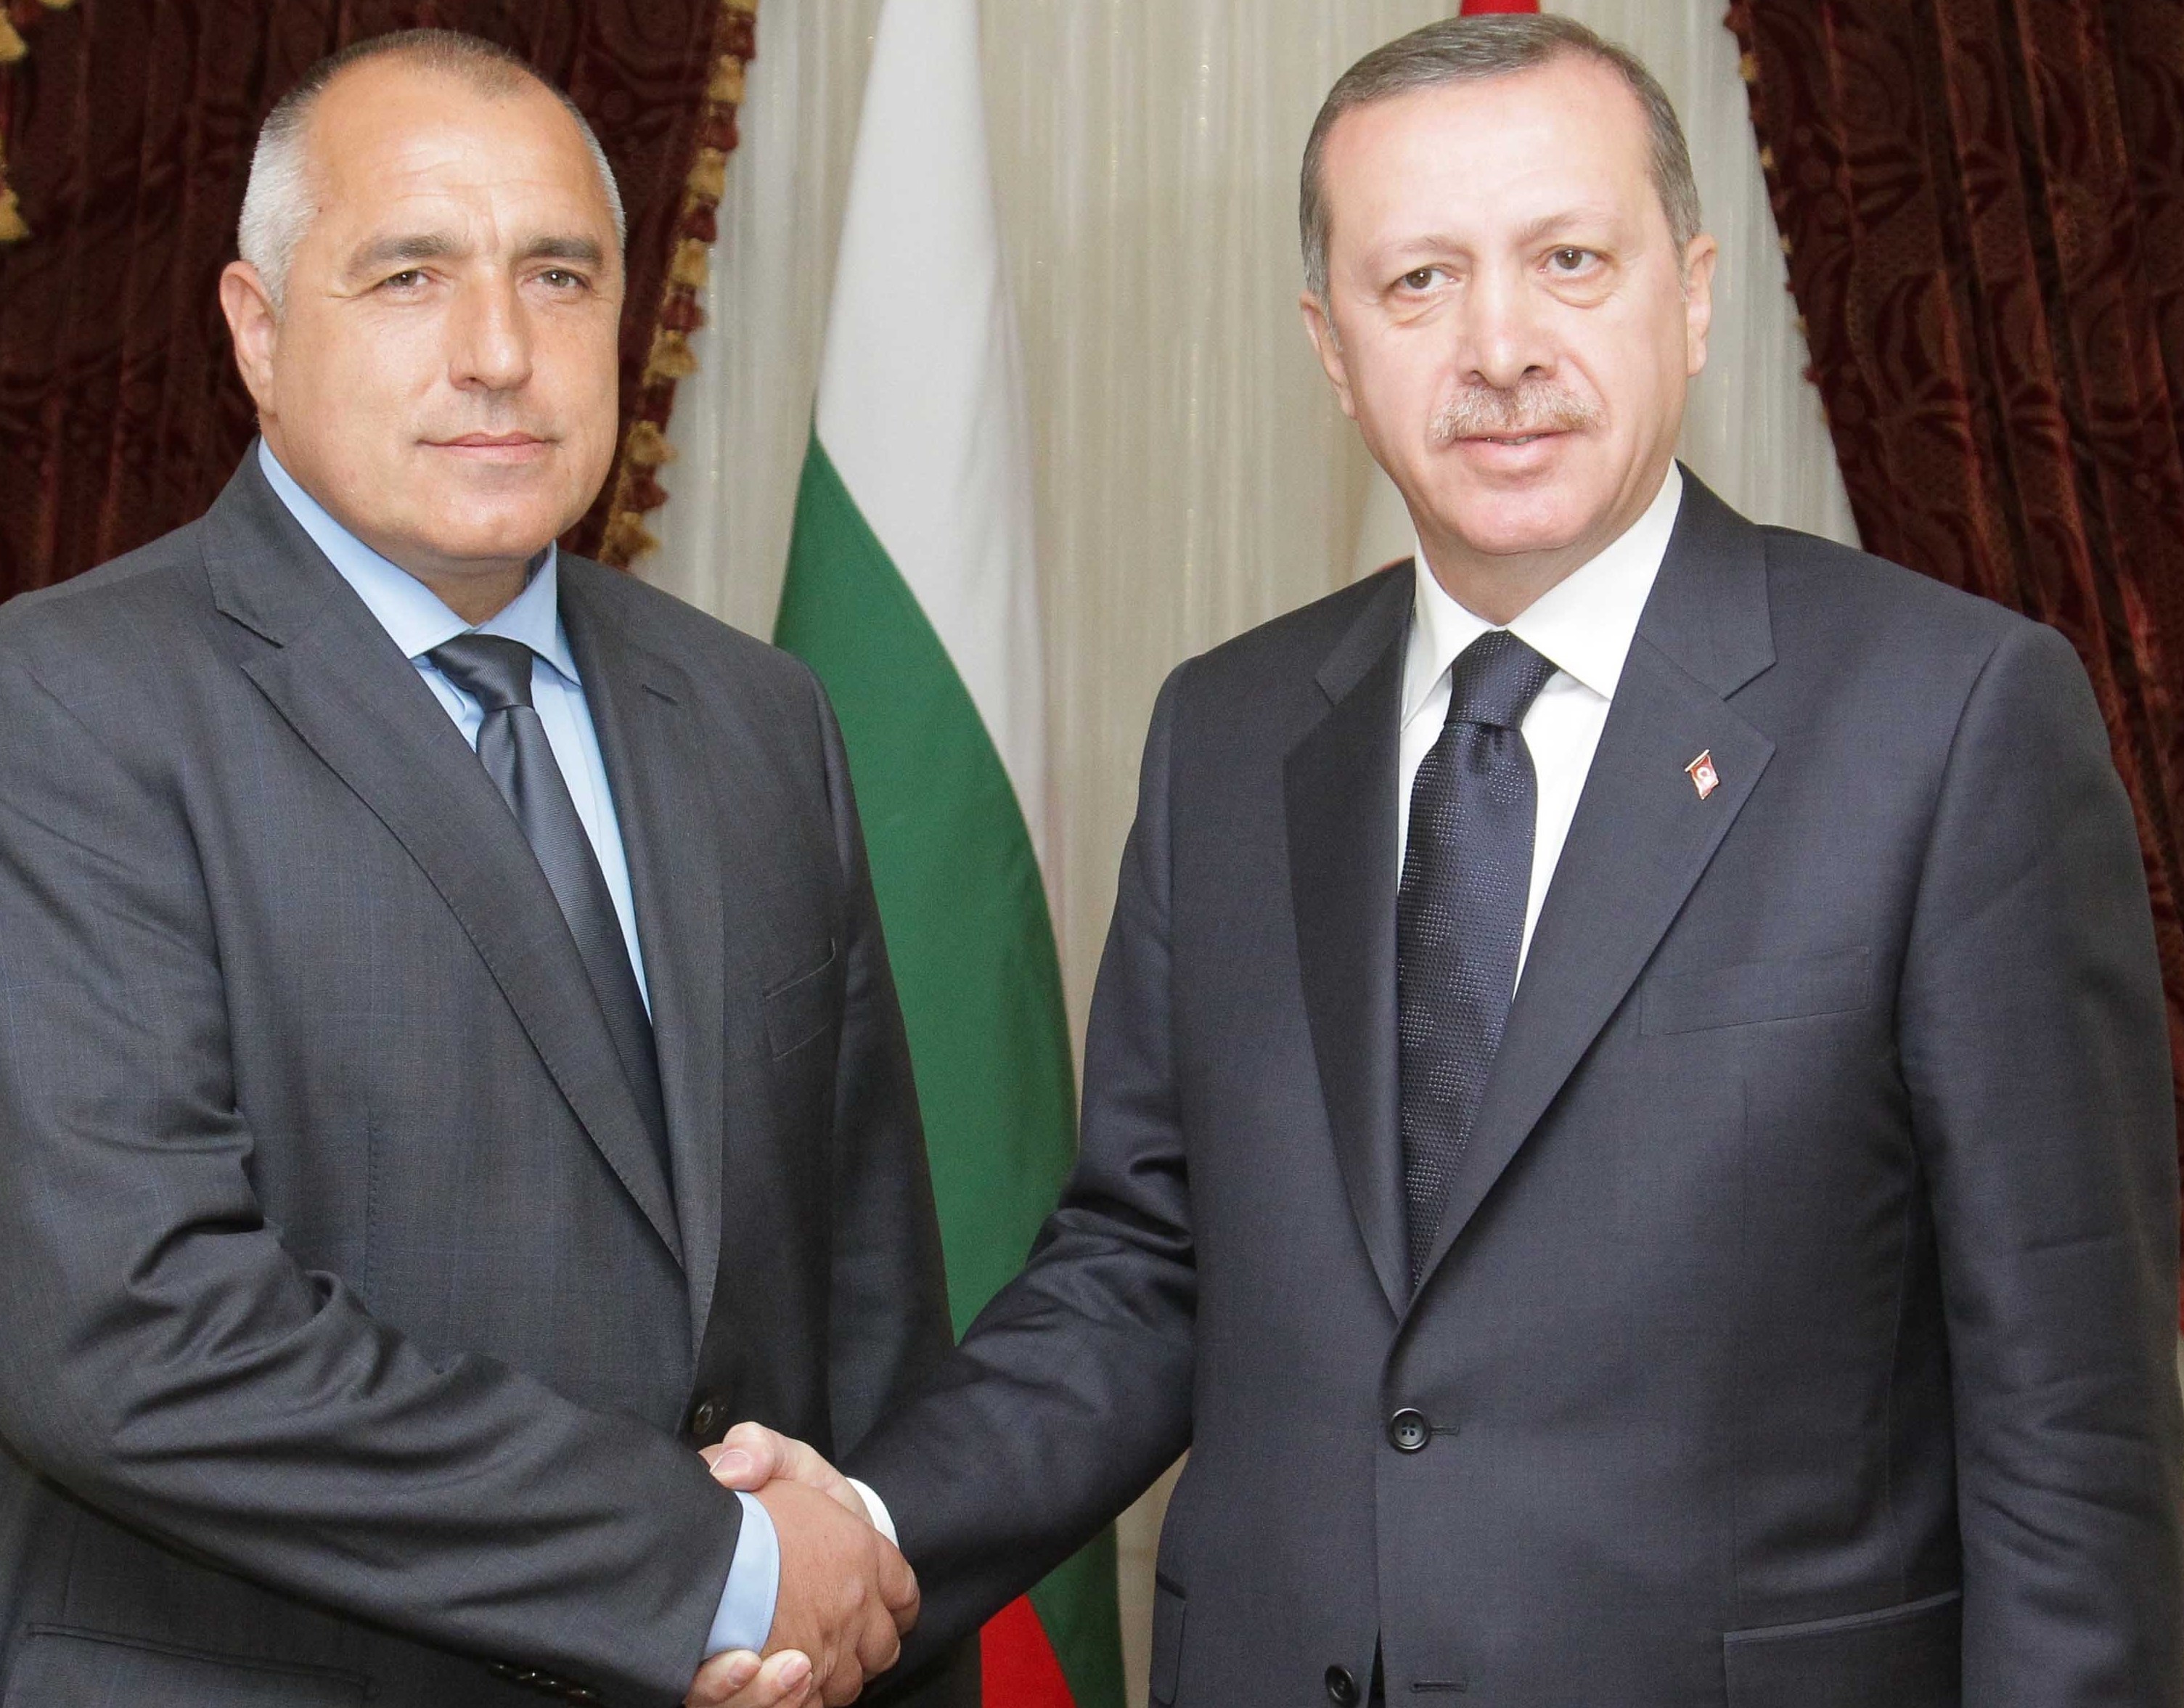 Хюриет дейли нюз: Какво се очаква от предстоящата среща ЕС-Турция в България